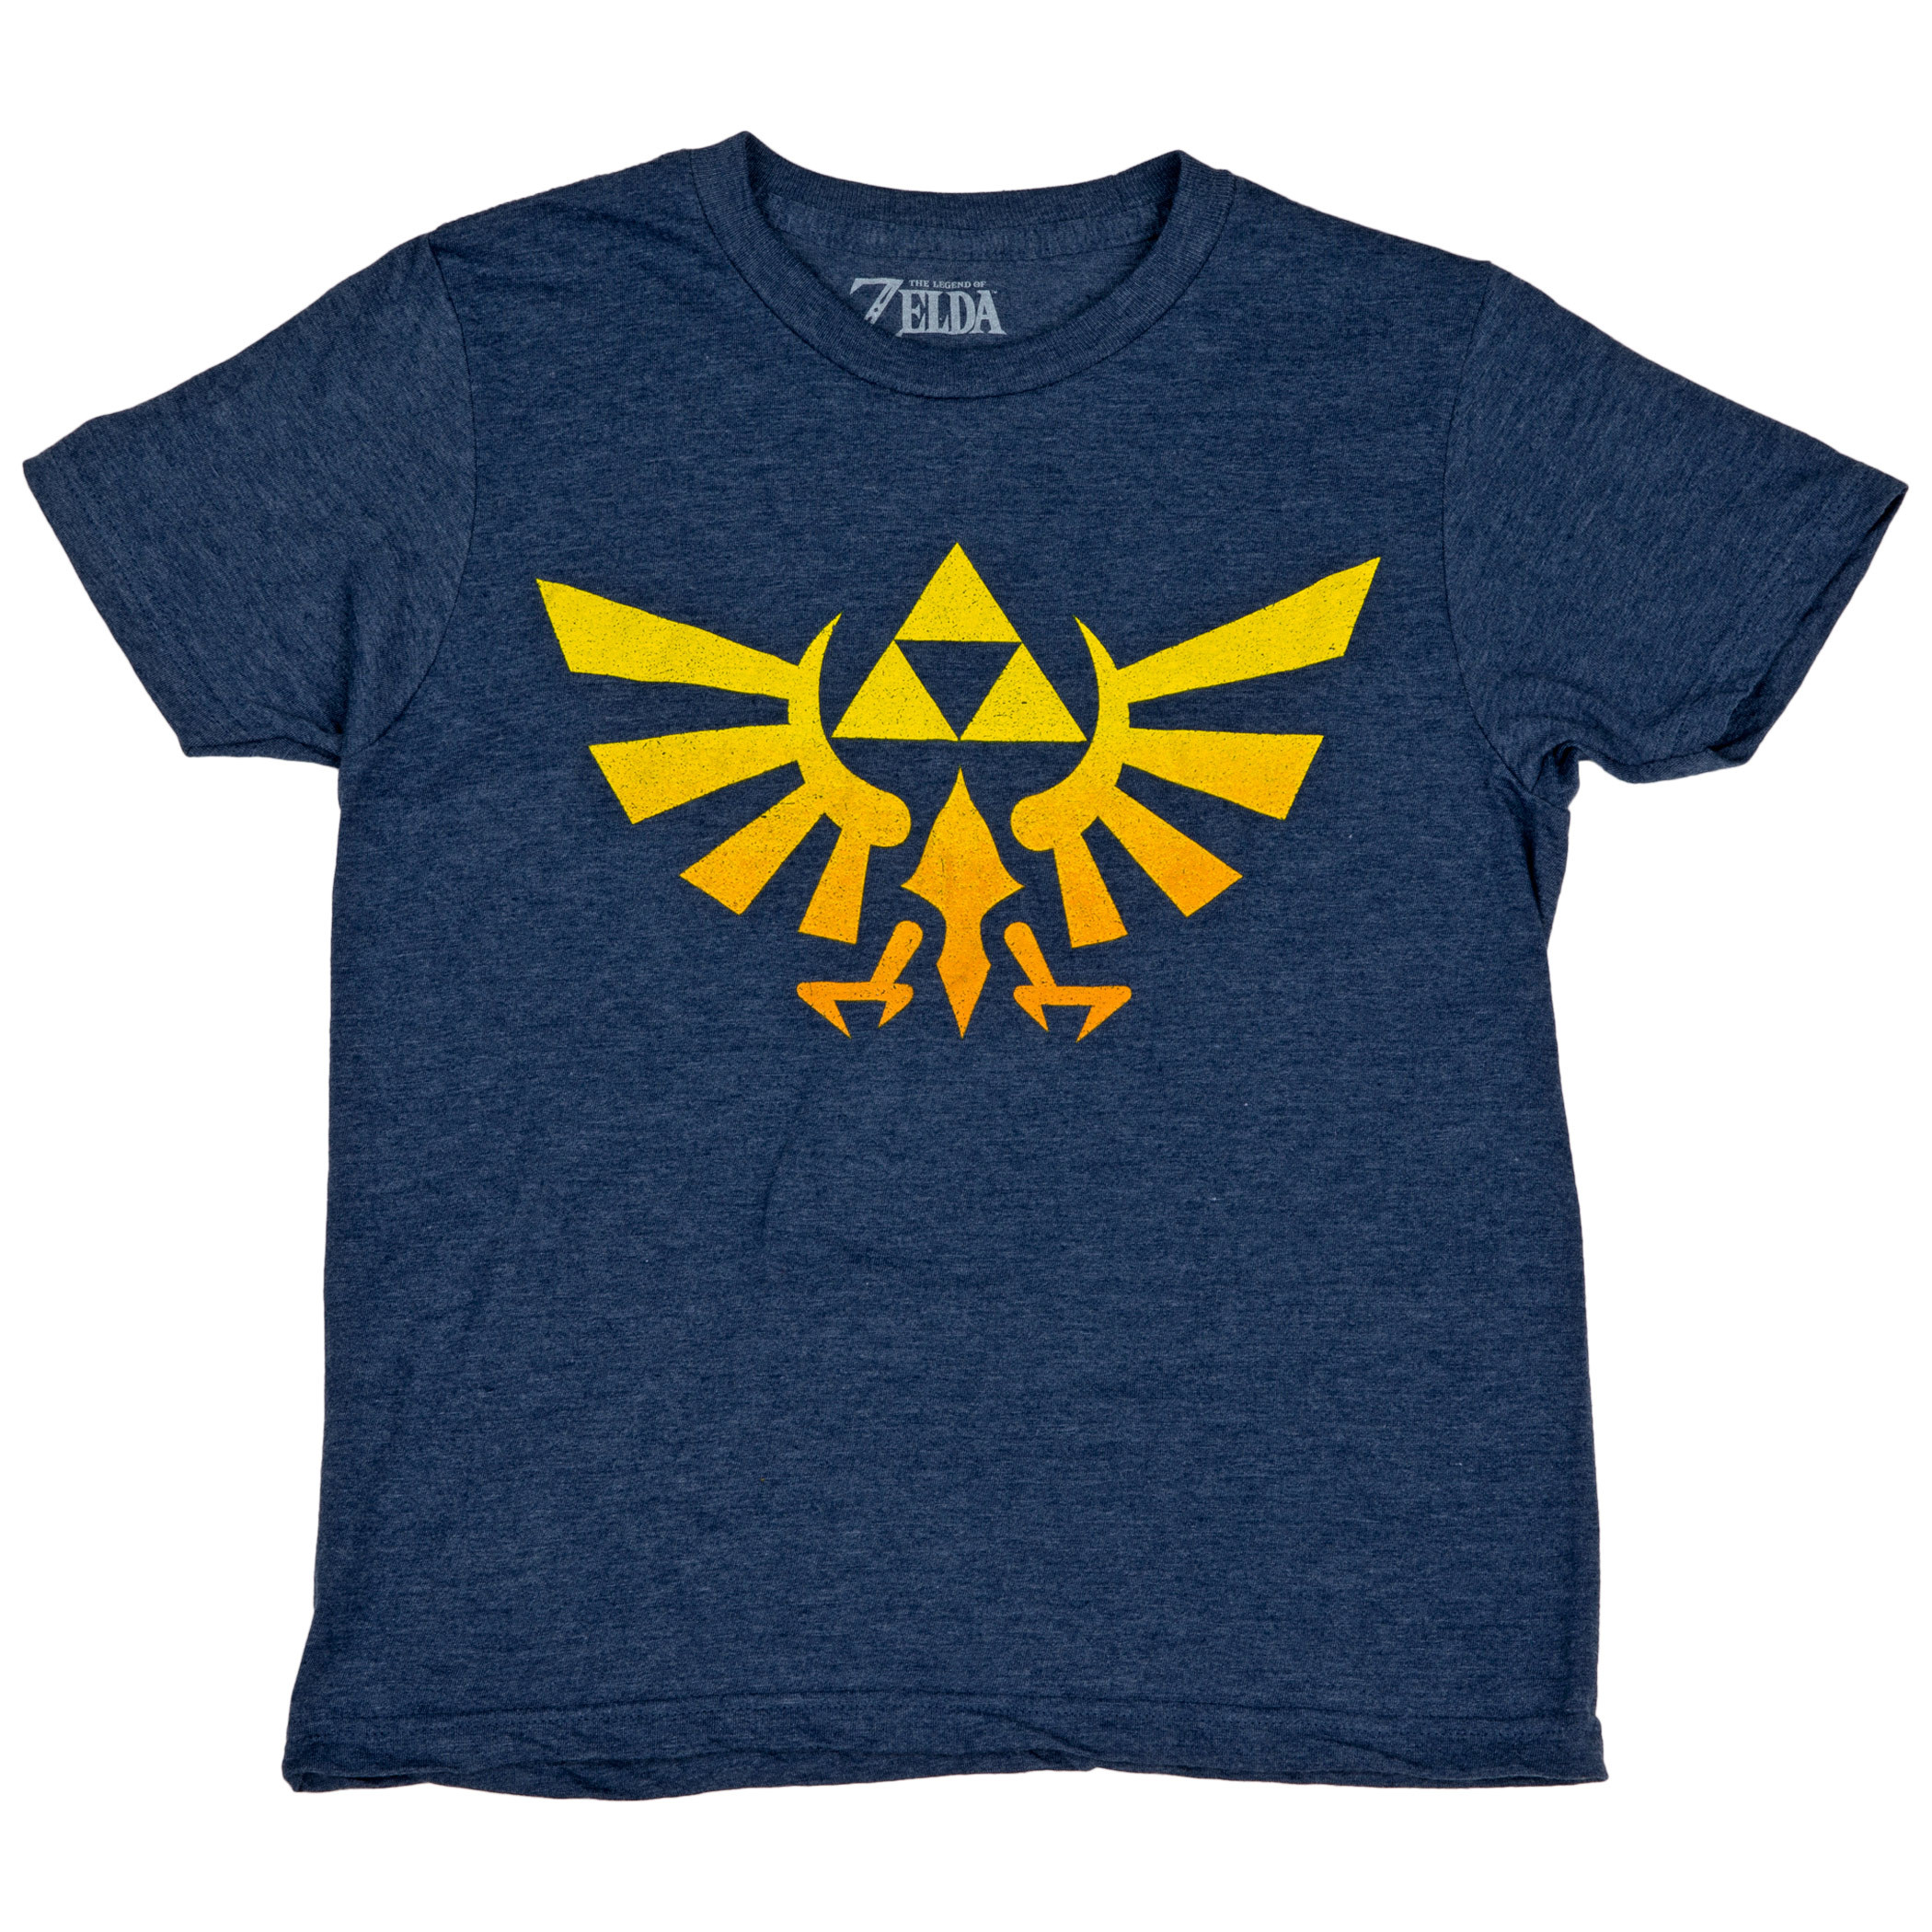 Nintendo The Legend of Zelda Royal Crest Youth T-Shirt